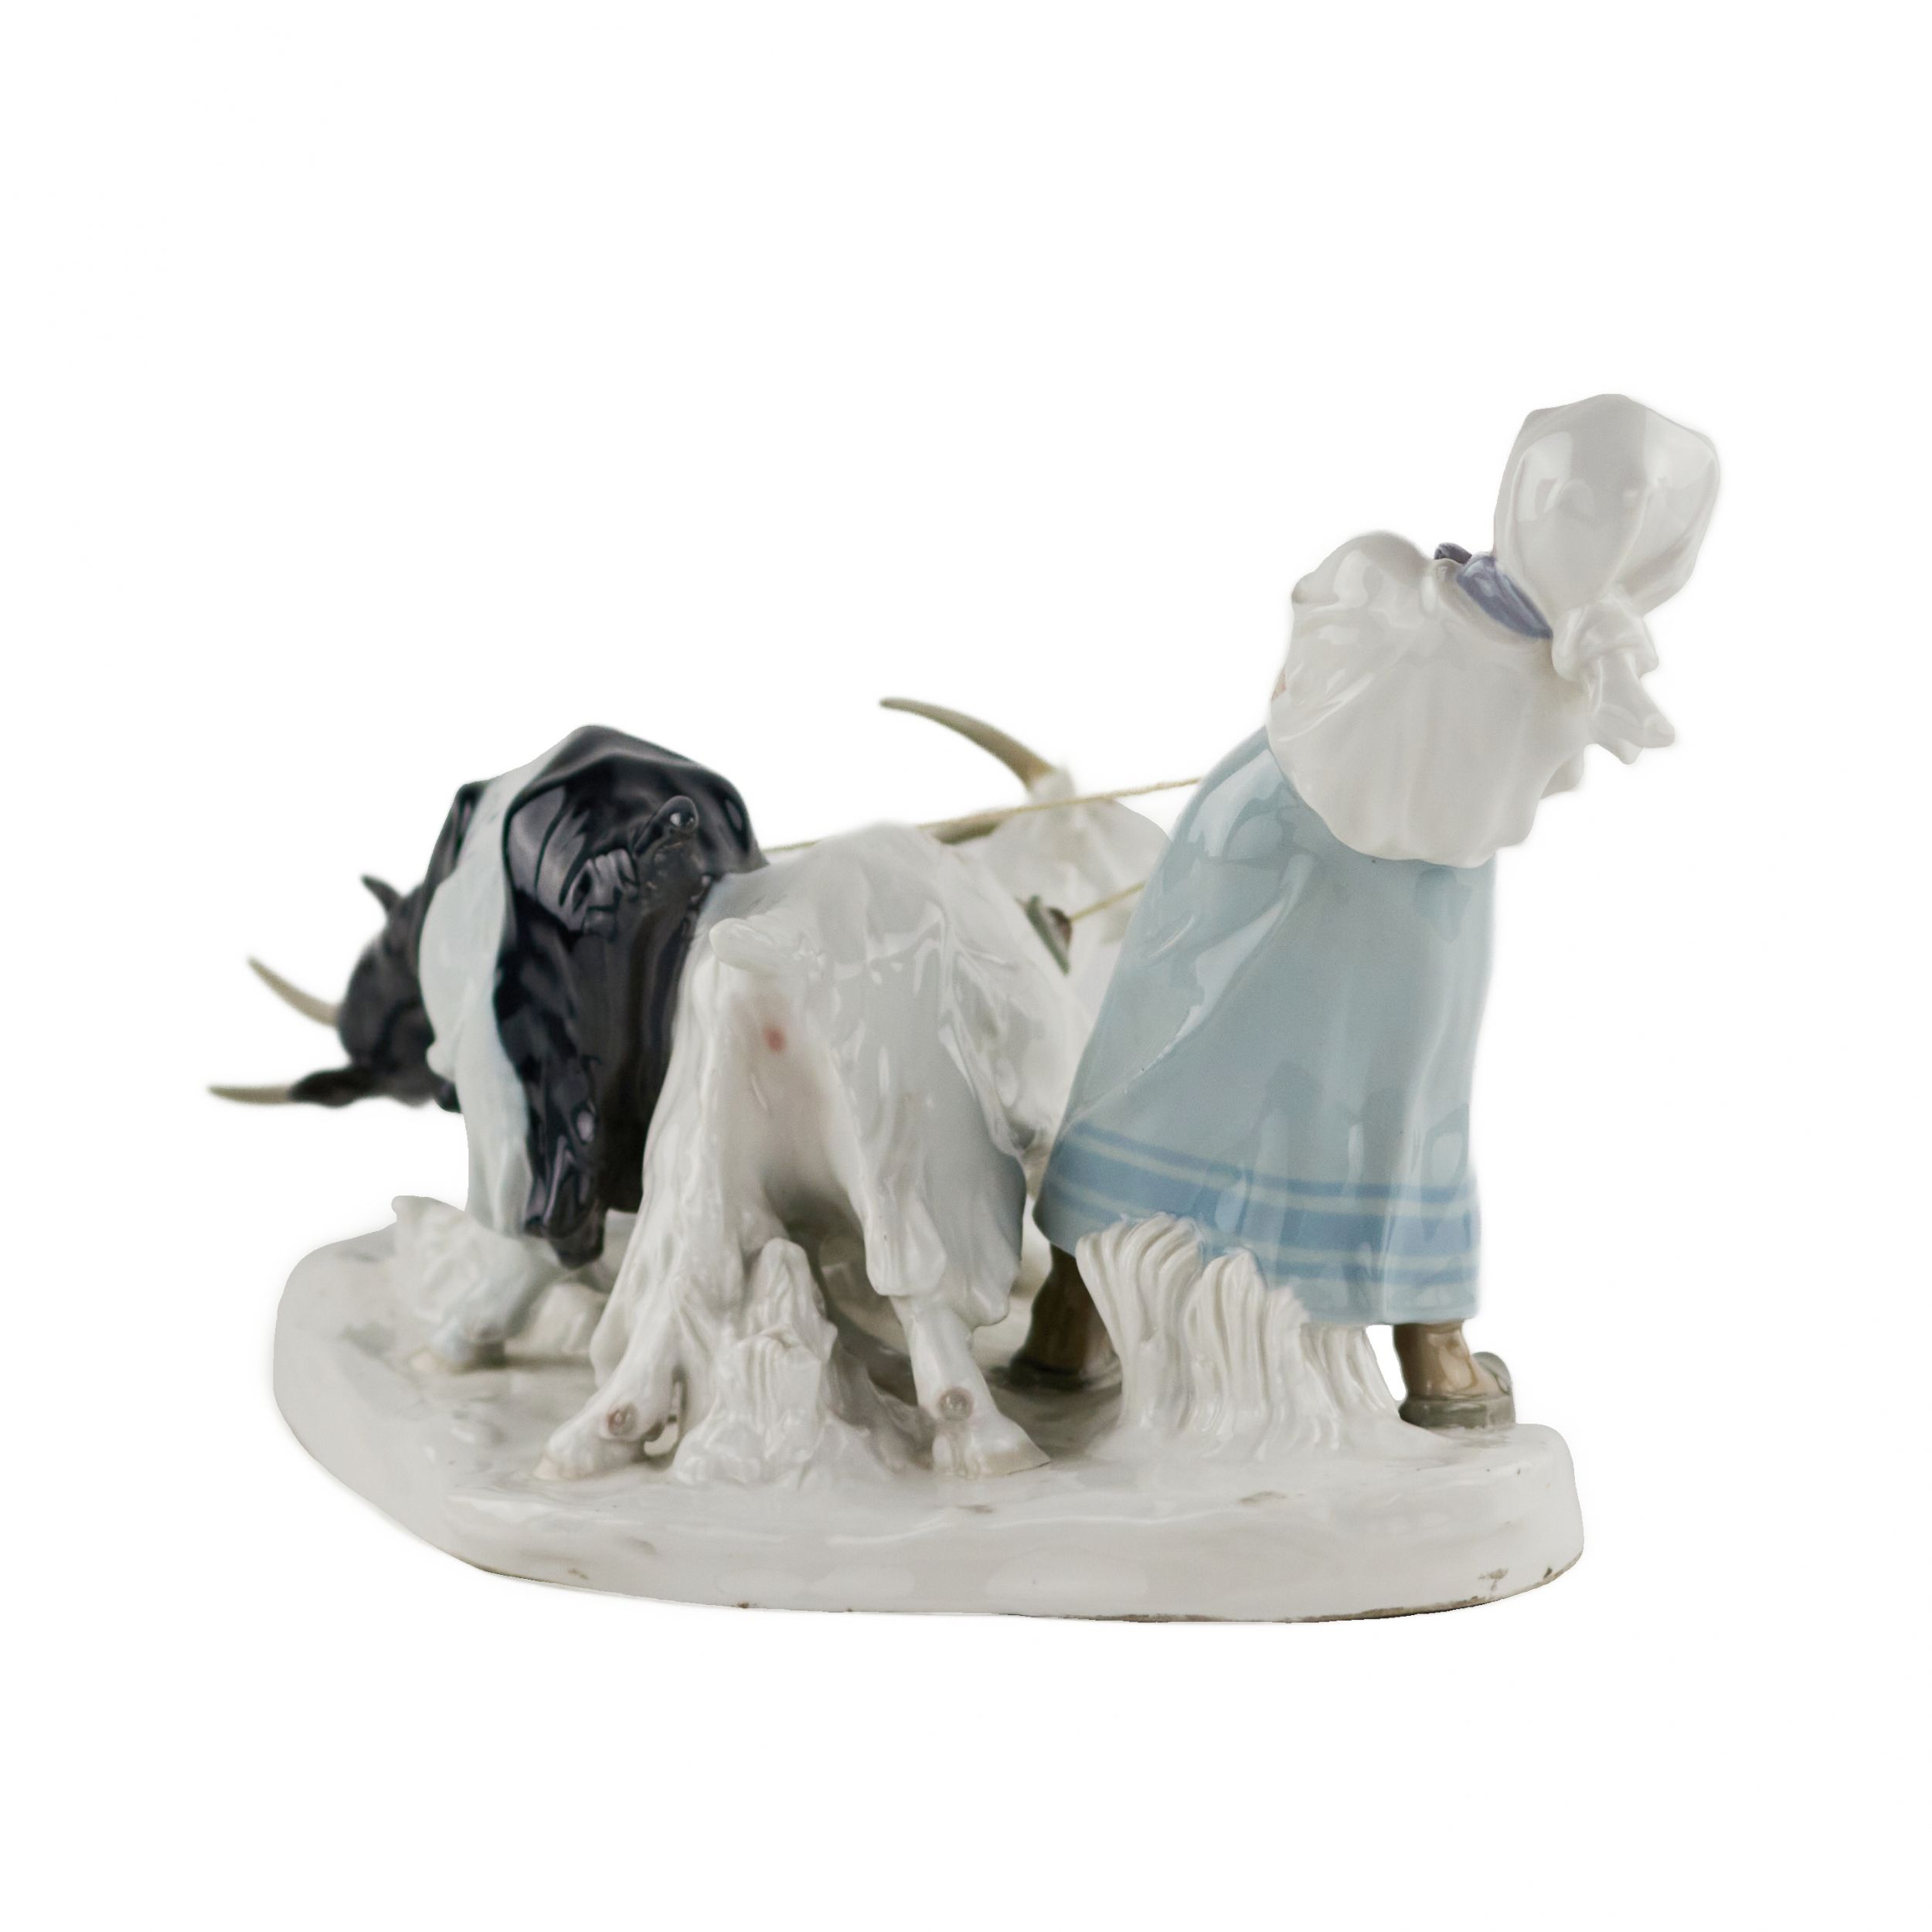 Porcelain composition Shepherdess with goats. Pilz, Otto. Meissen. 1850-1924. - Bild 4 aus 7